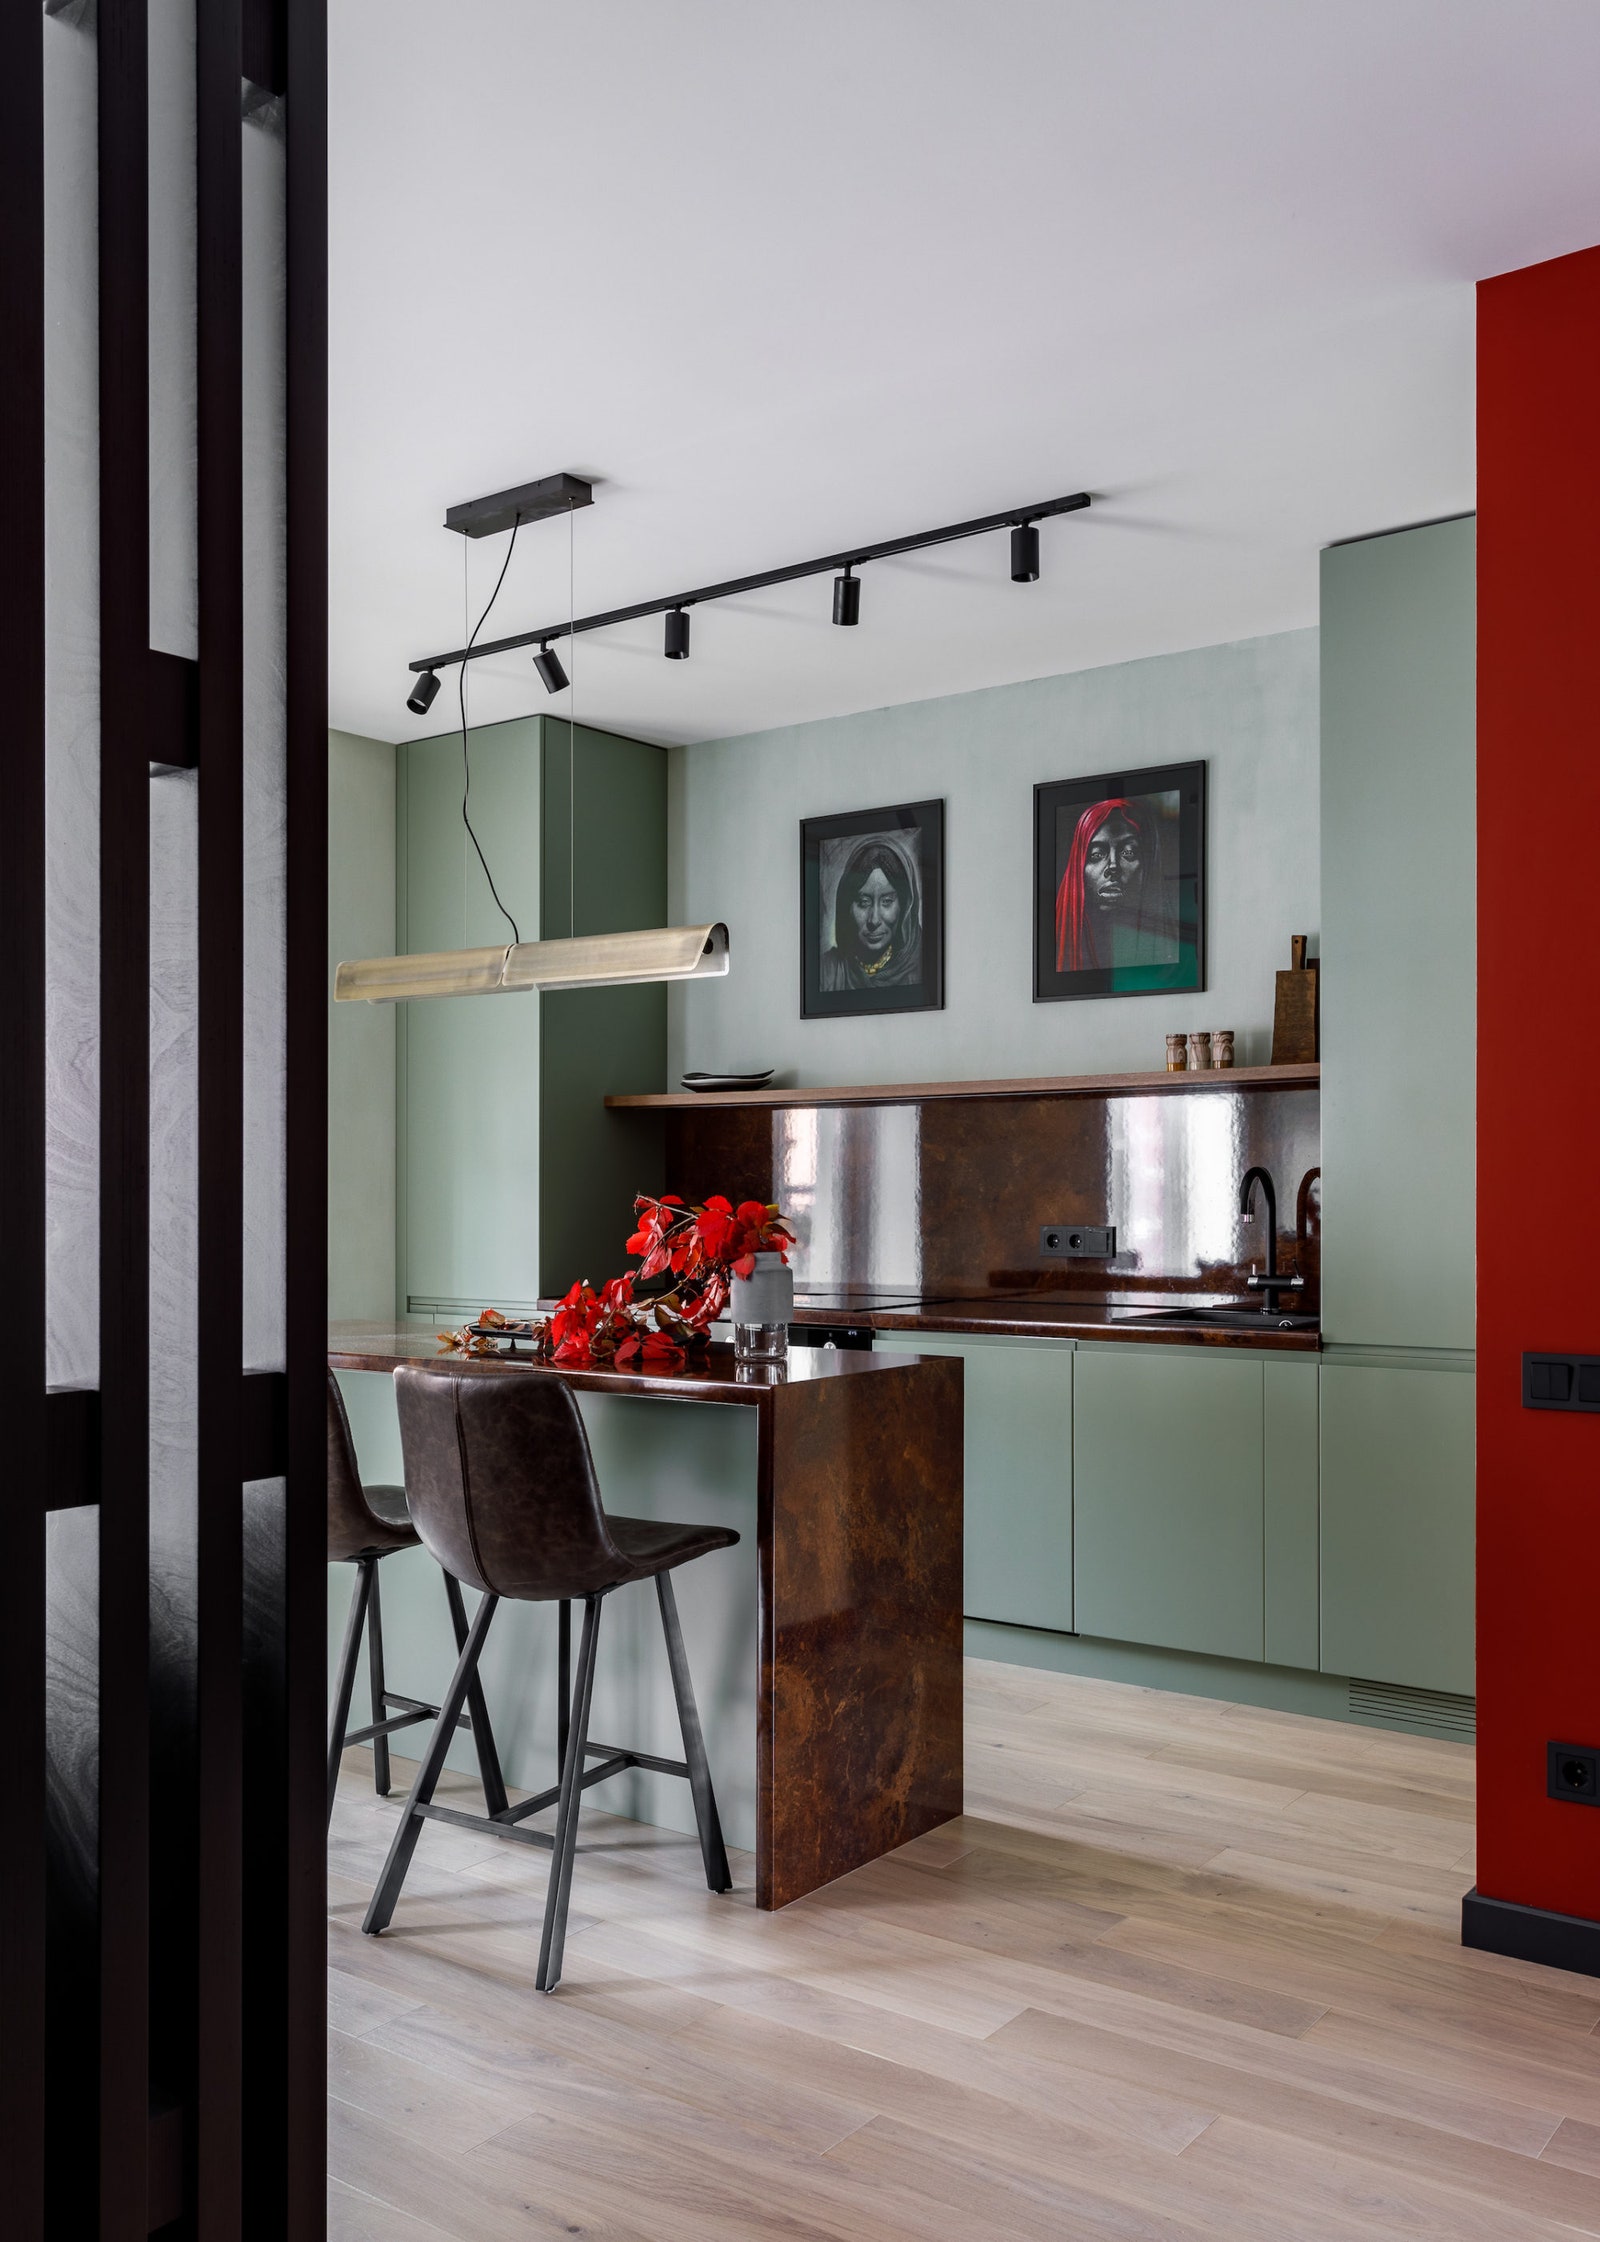 Проект Smart Interior Design. Кухня. Фасады шкафов выкрашены в цвет стен картины из коллекции заказчицы барные стулья...